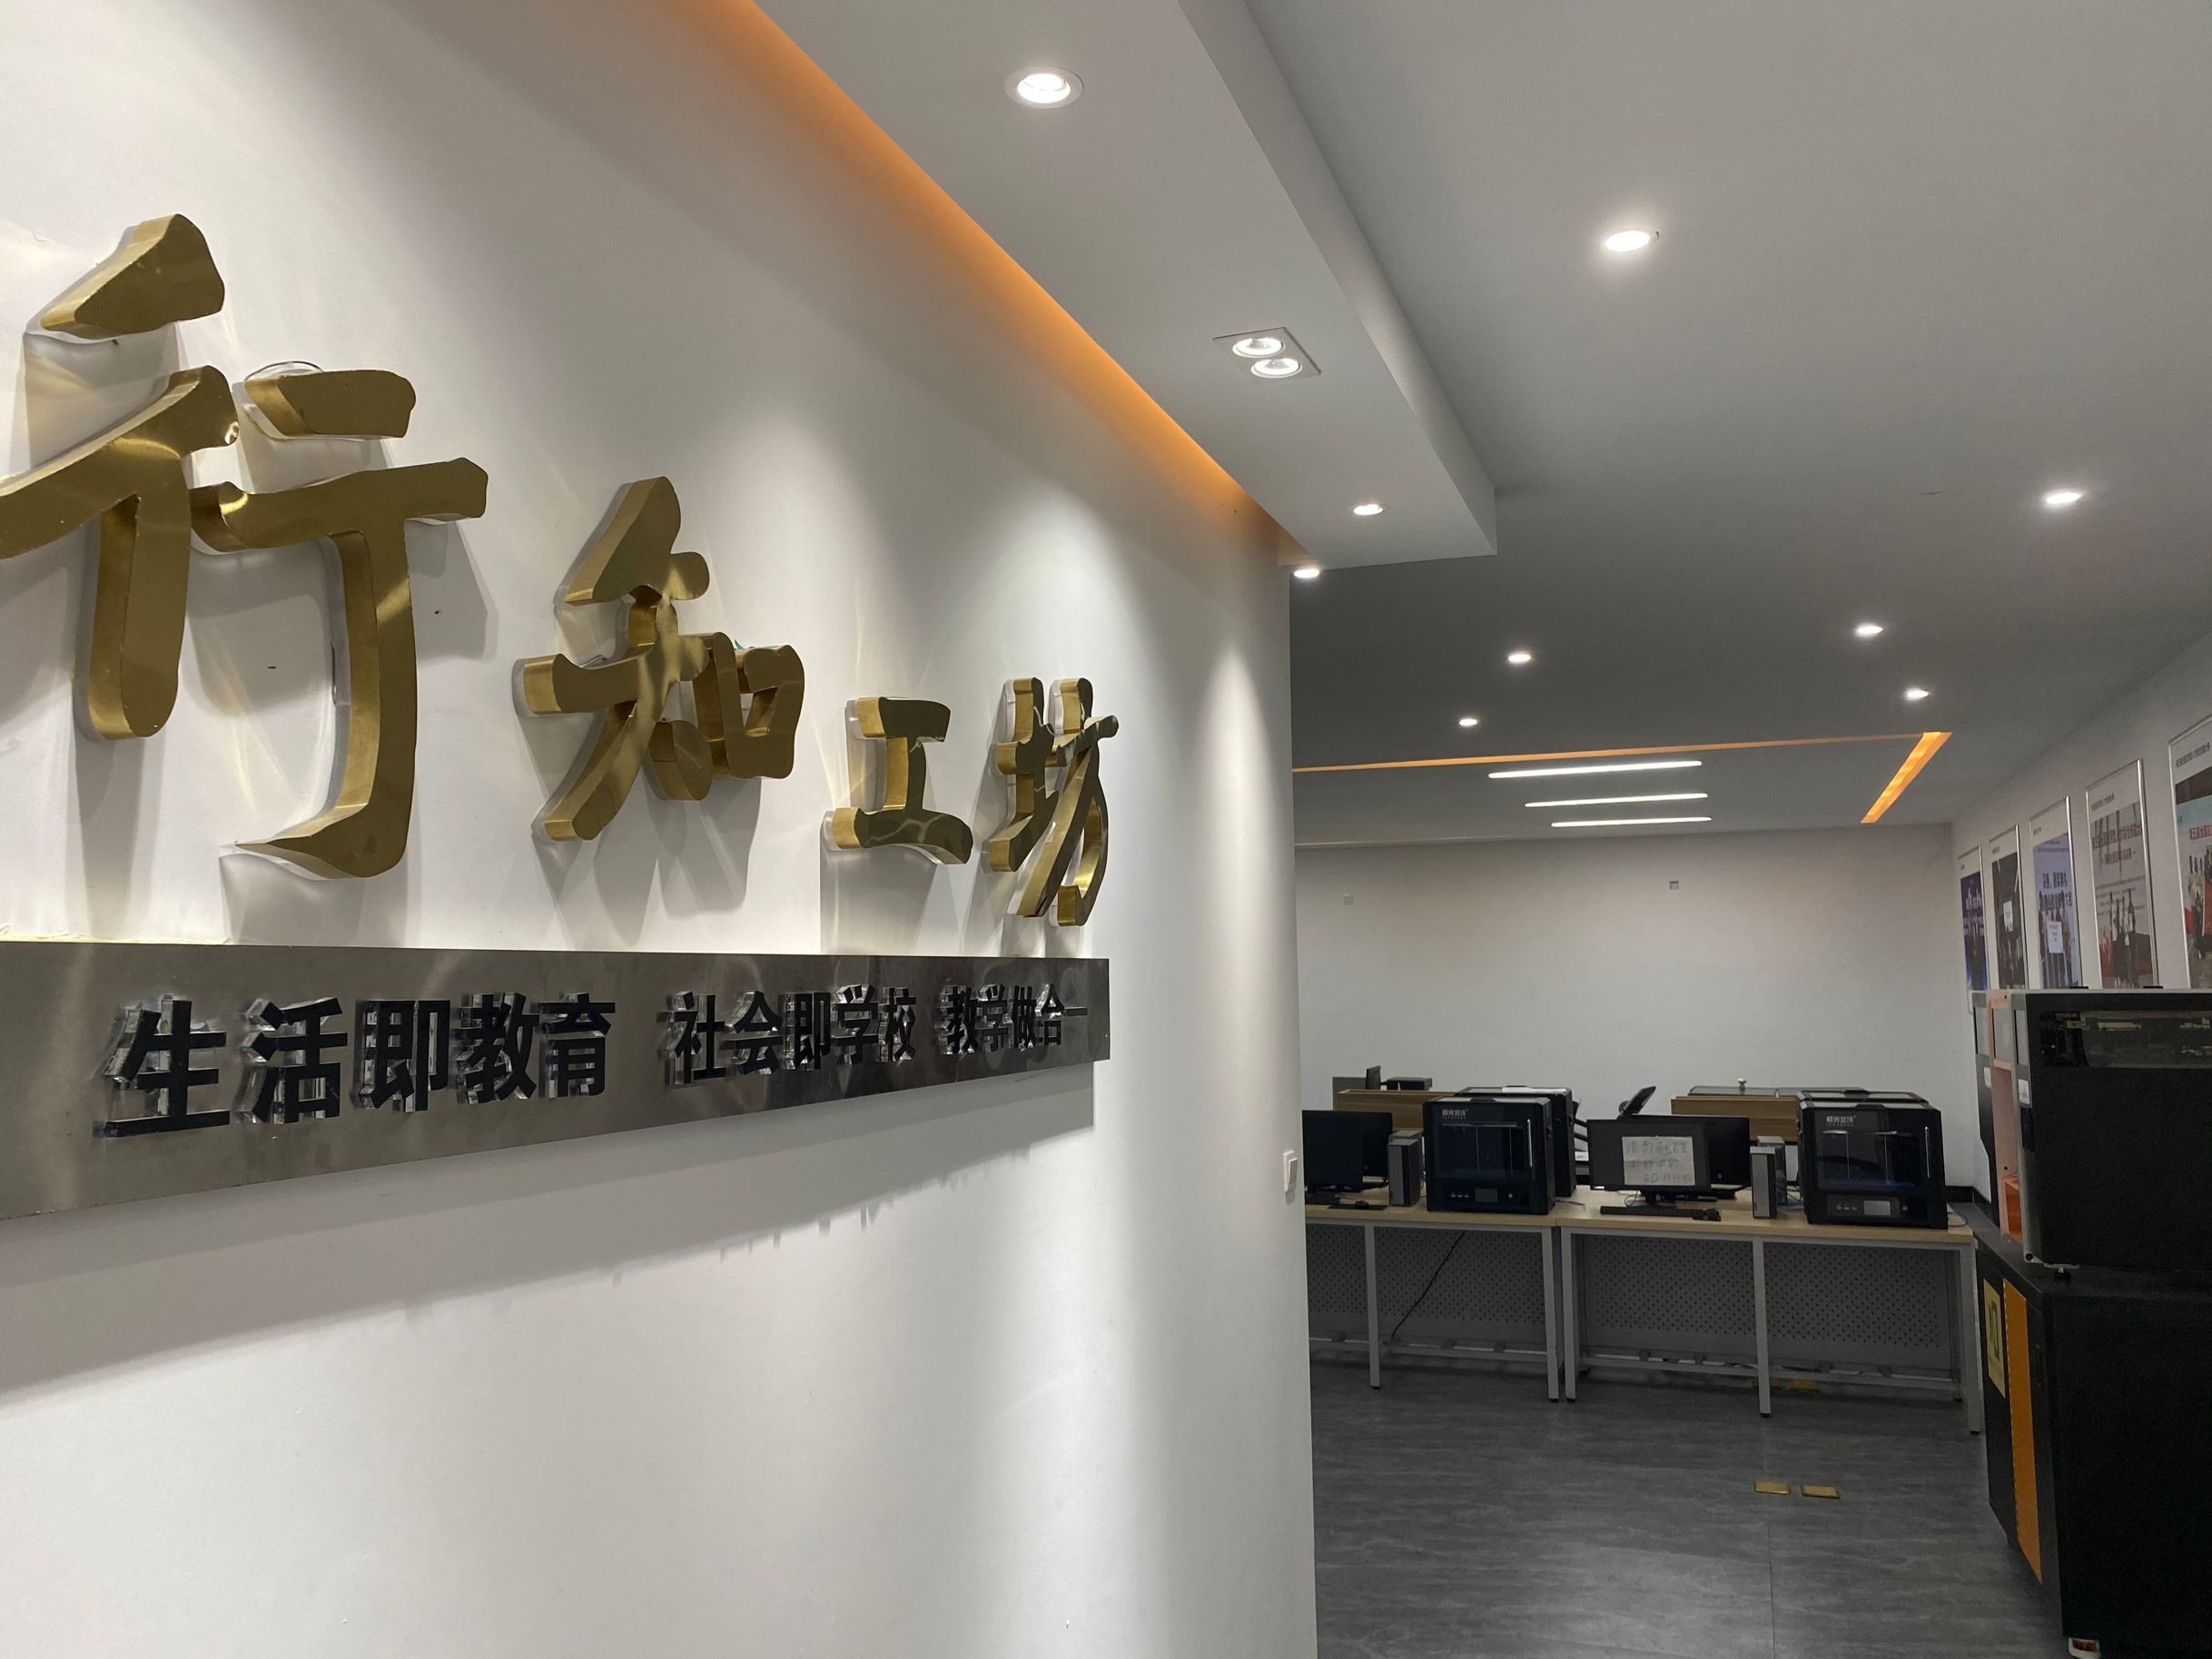 重庆人文科技学院建筑与设计学院